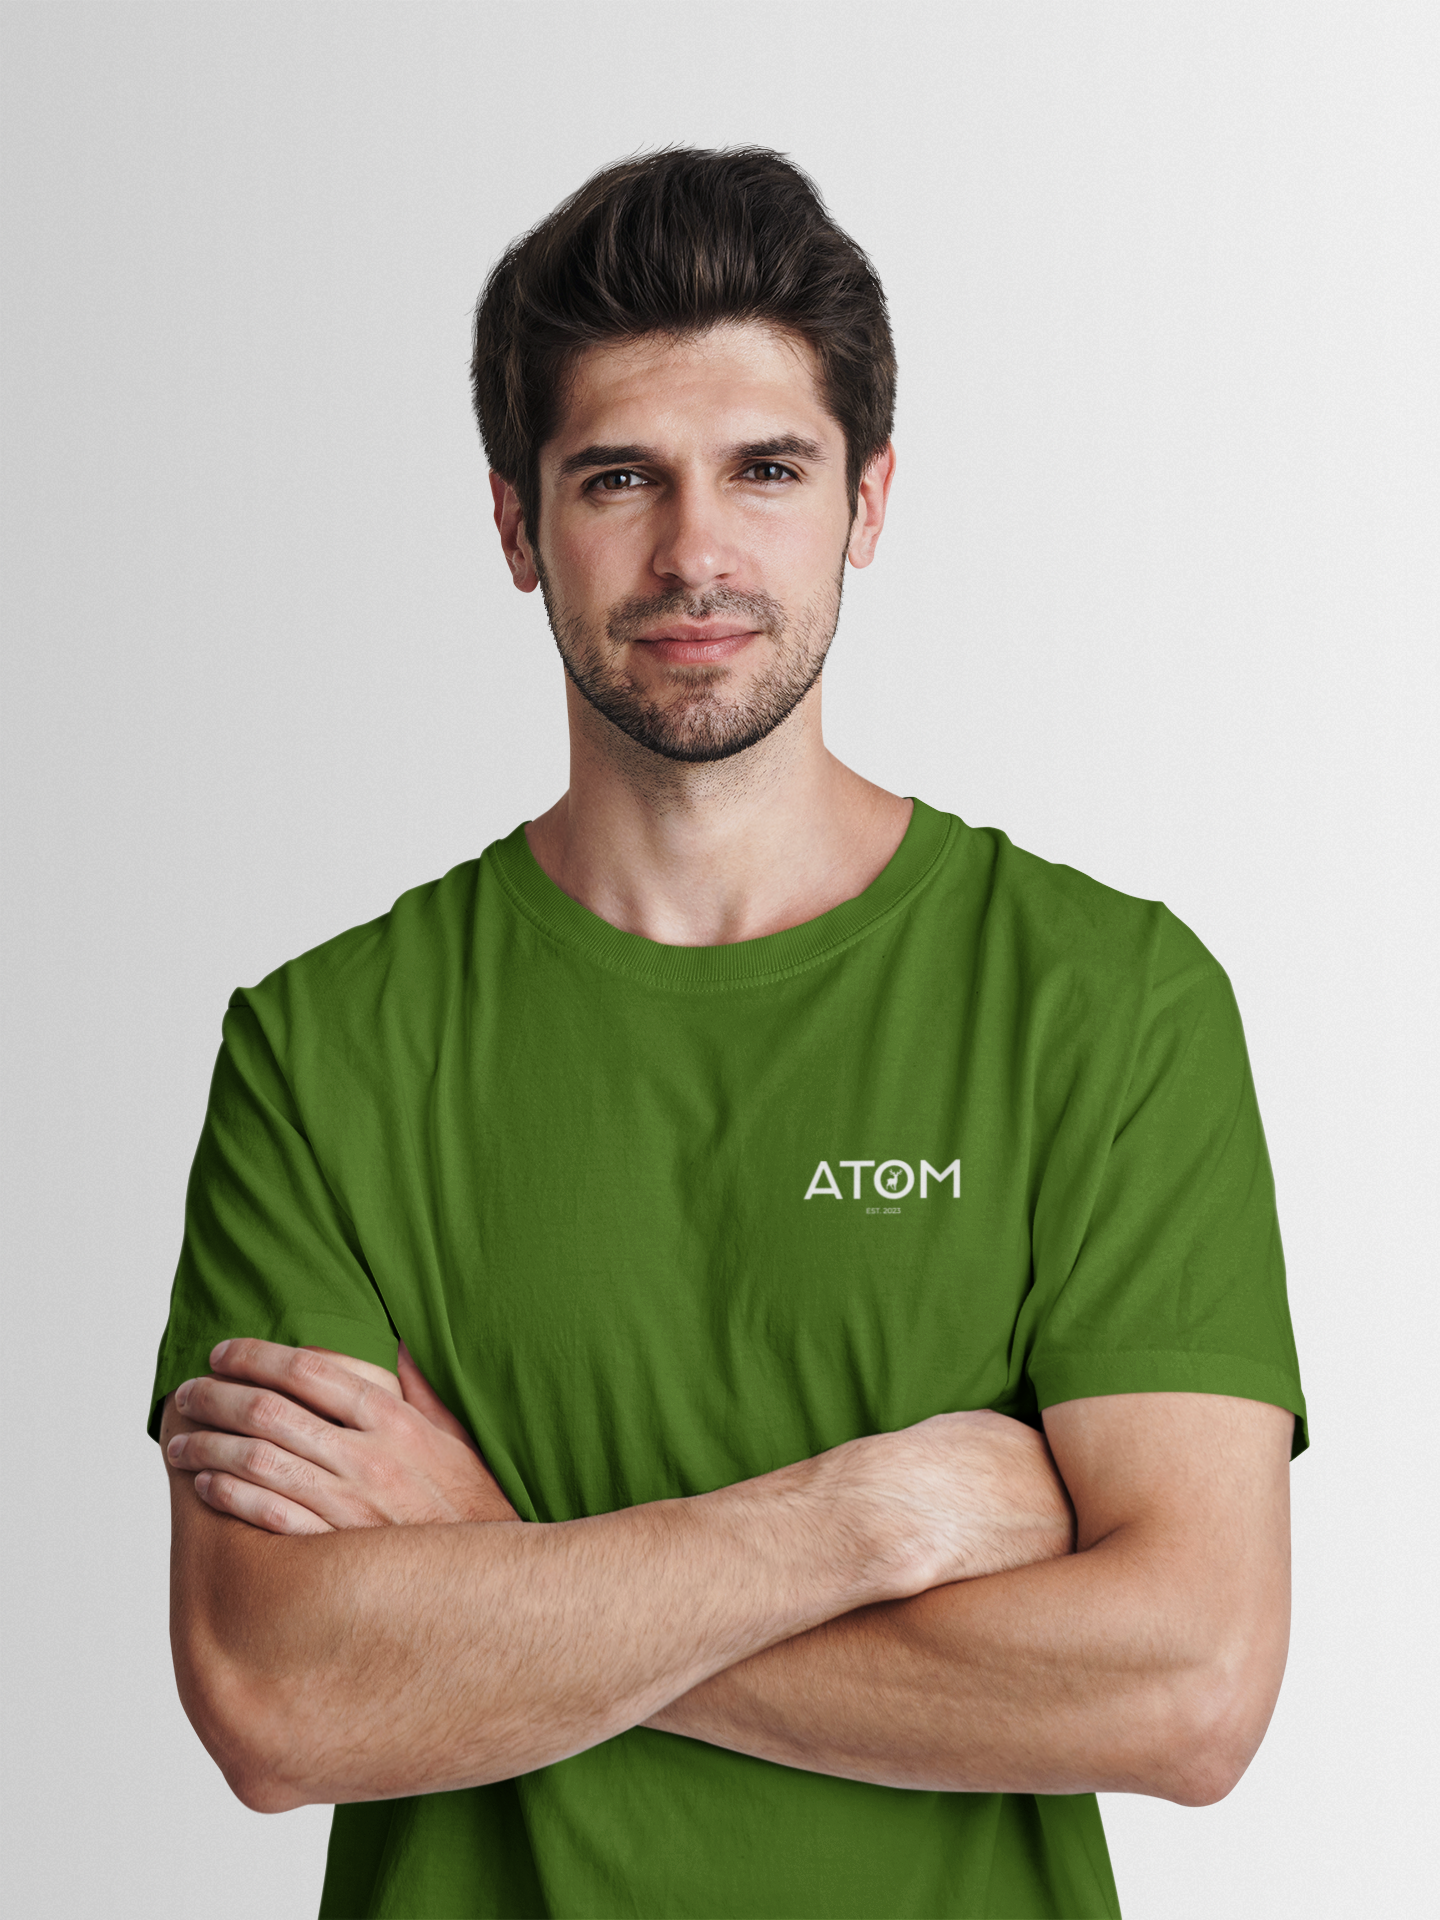 ATOM Logo Basic Green Round Neck T-Shirt for Men.